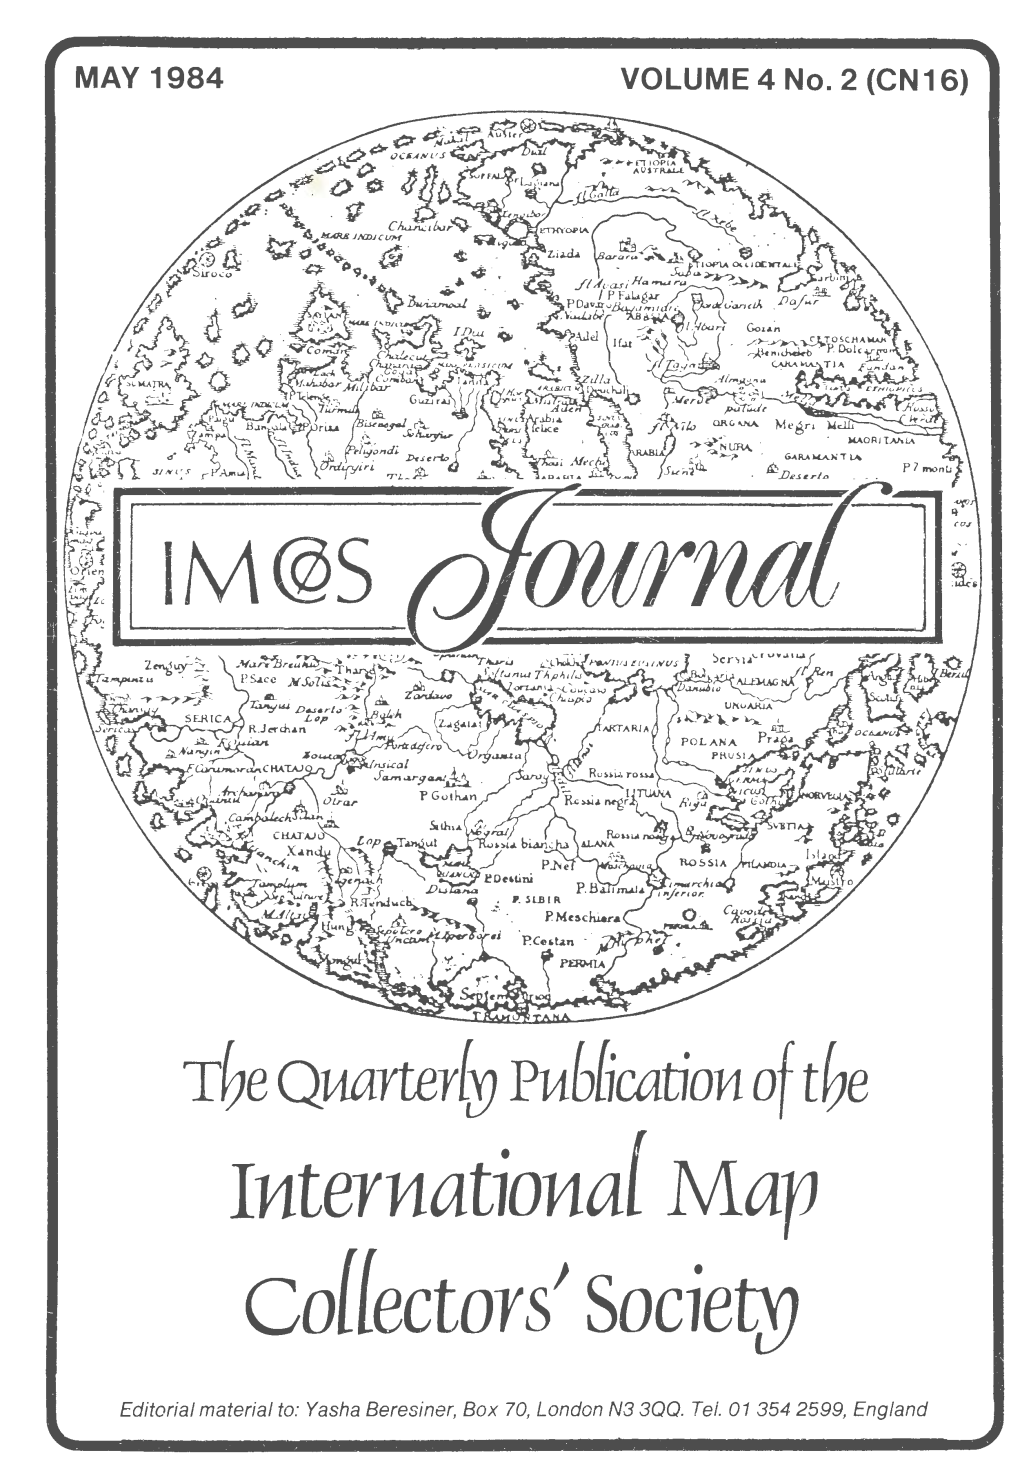 Lj1termatio11al Map Collectors' Socie~